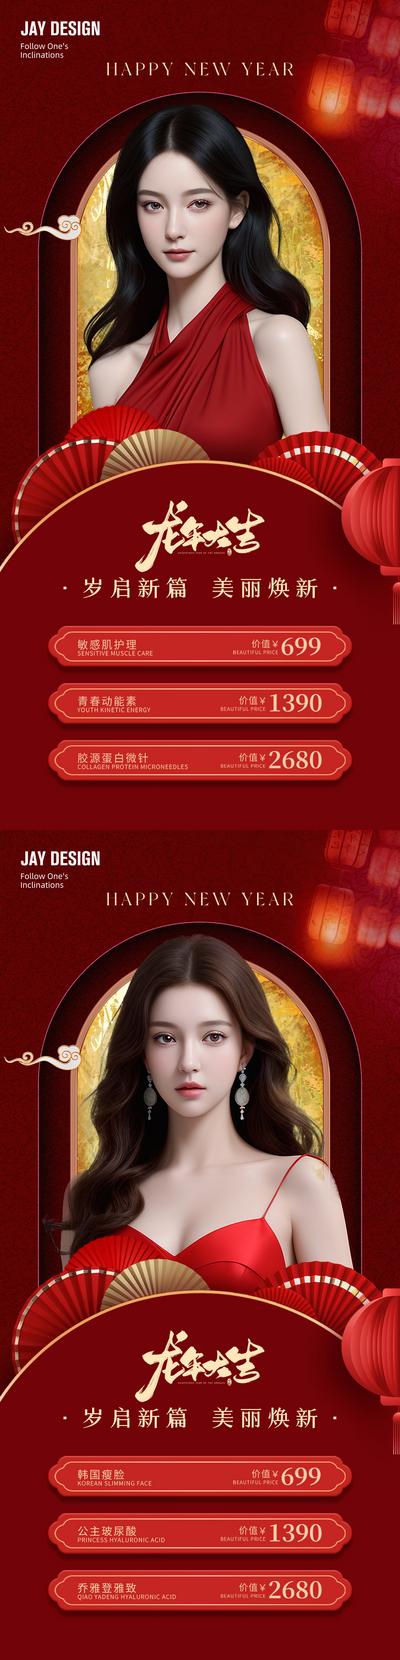 南门网 广告 海报 医美 人物 活动 中式 红金 系列 AI女 卡项 新年 龙年 春节 灯笼 扇子 喜庆 整形 复古